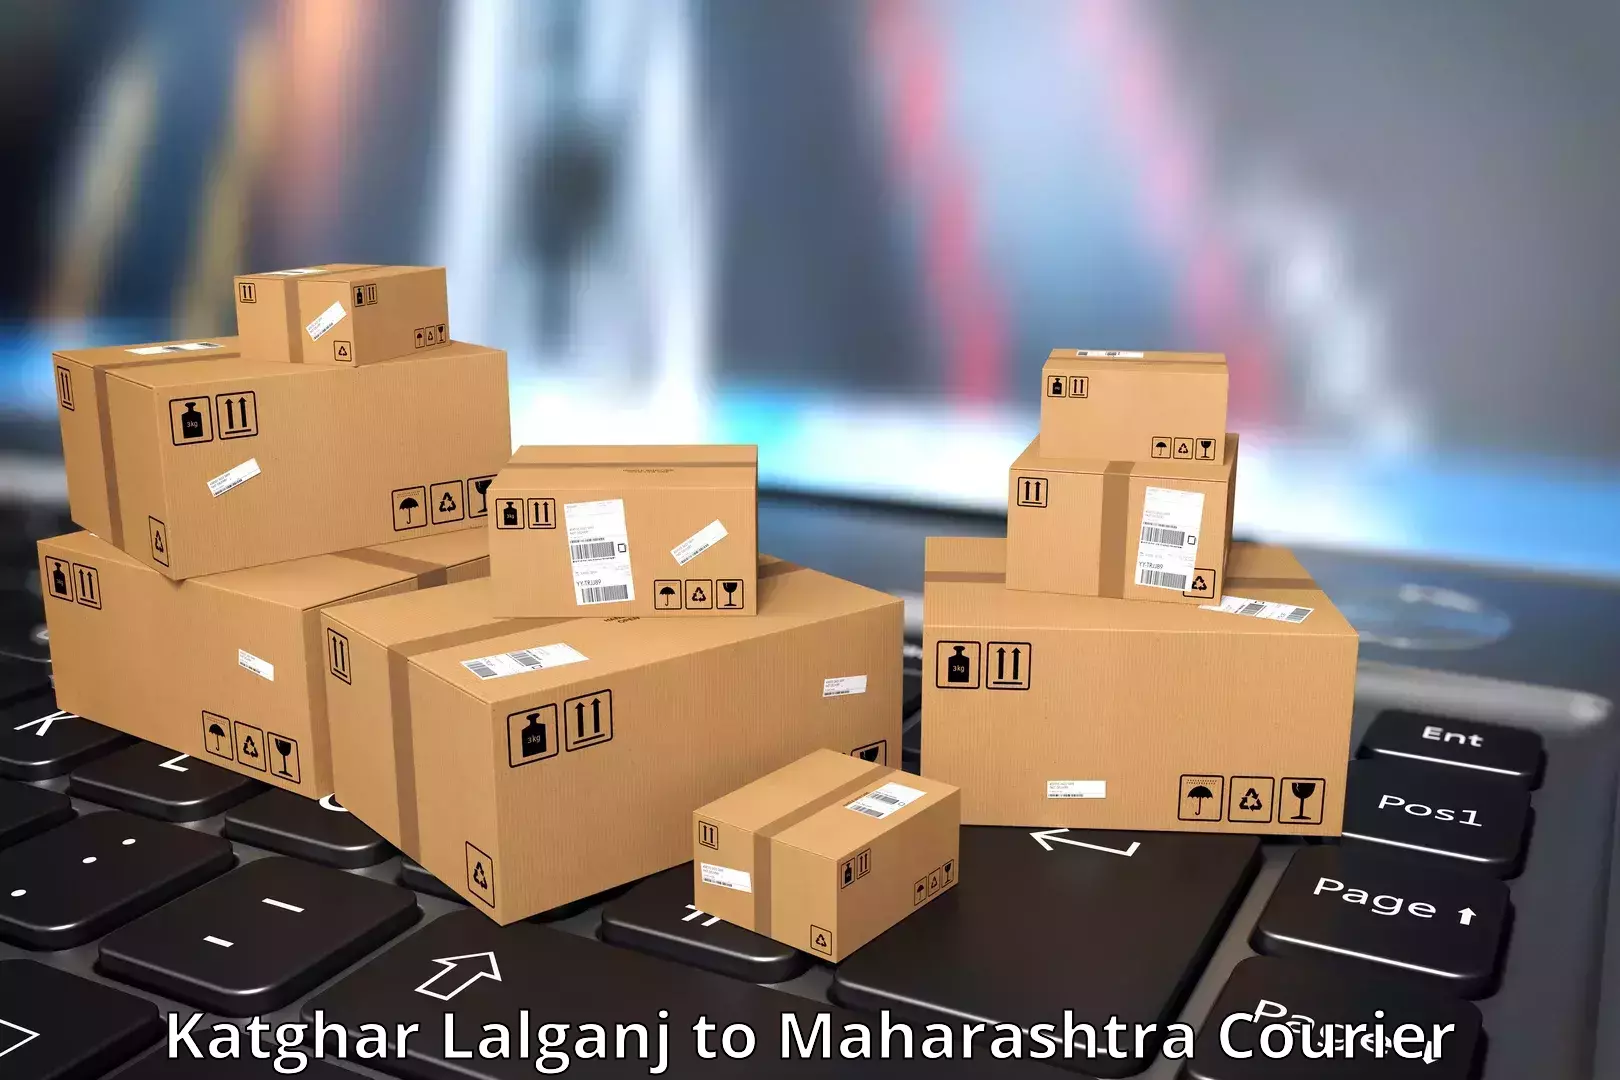 User-friendly delivery service in Katghar Lalganj to Maharashtra